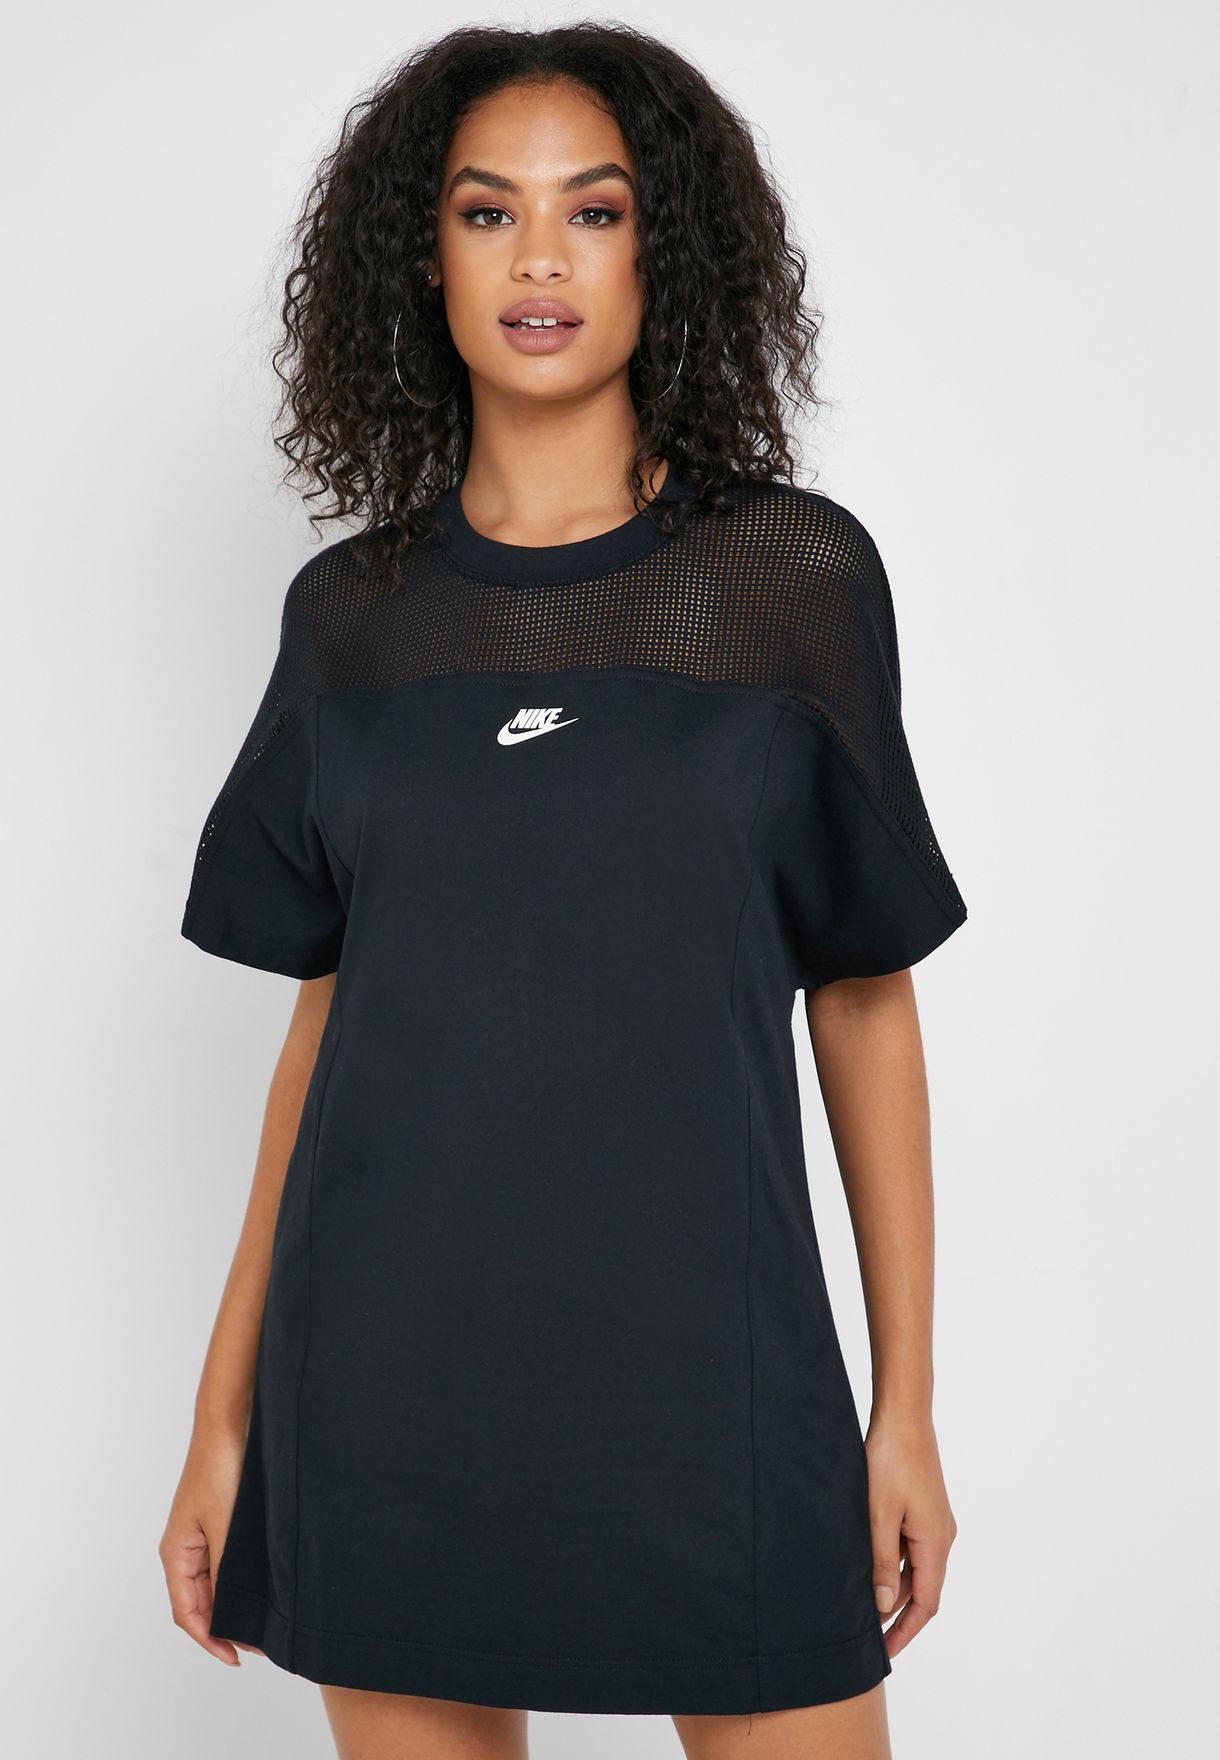 Buy > nike sportswear mesh dress > in stock